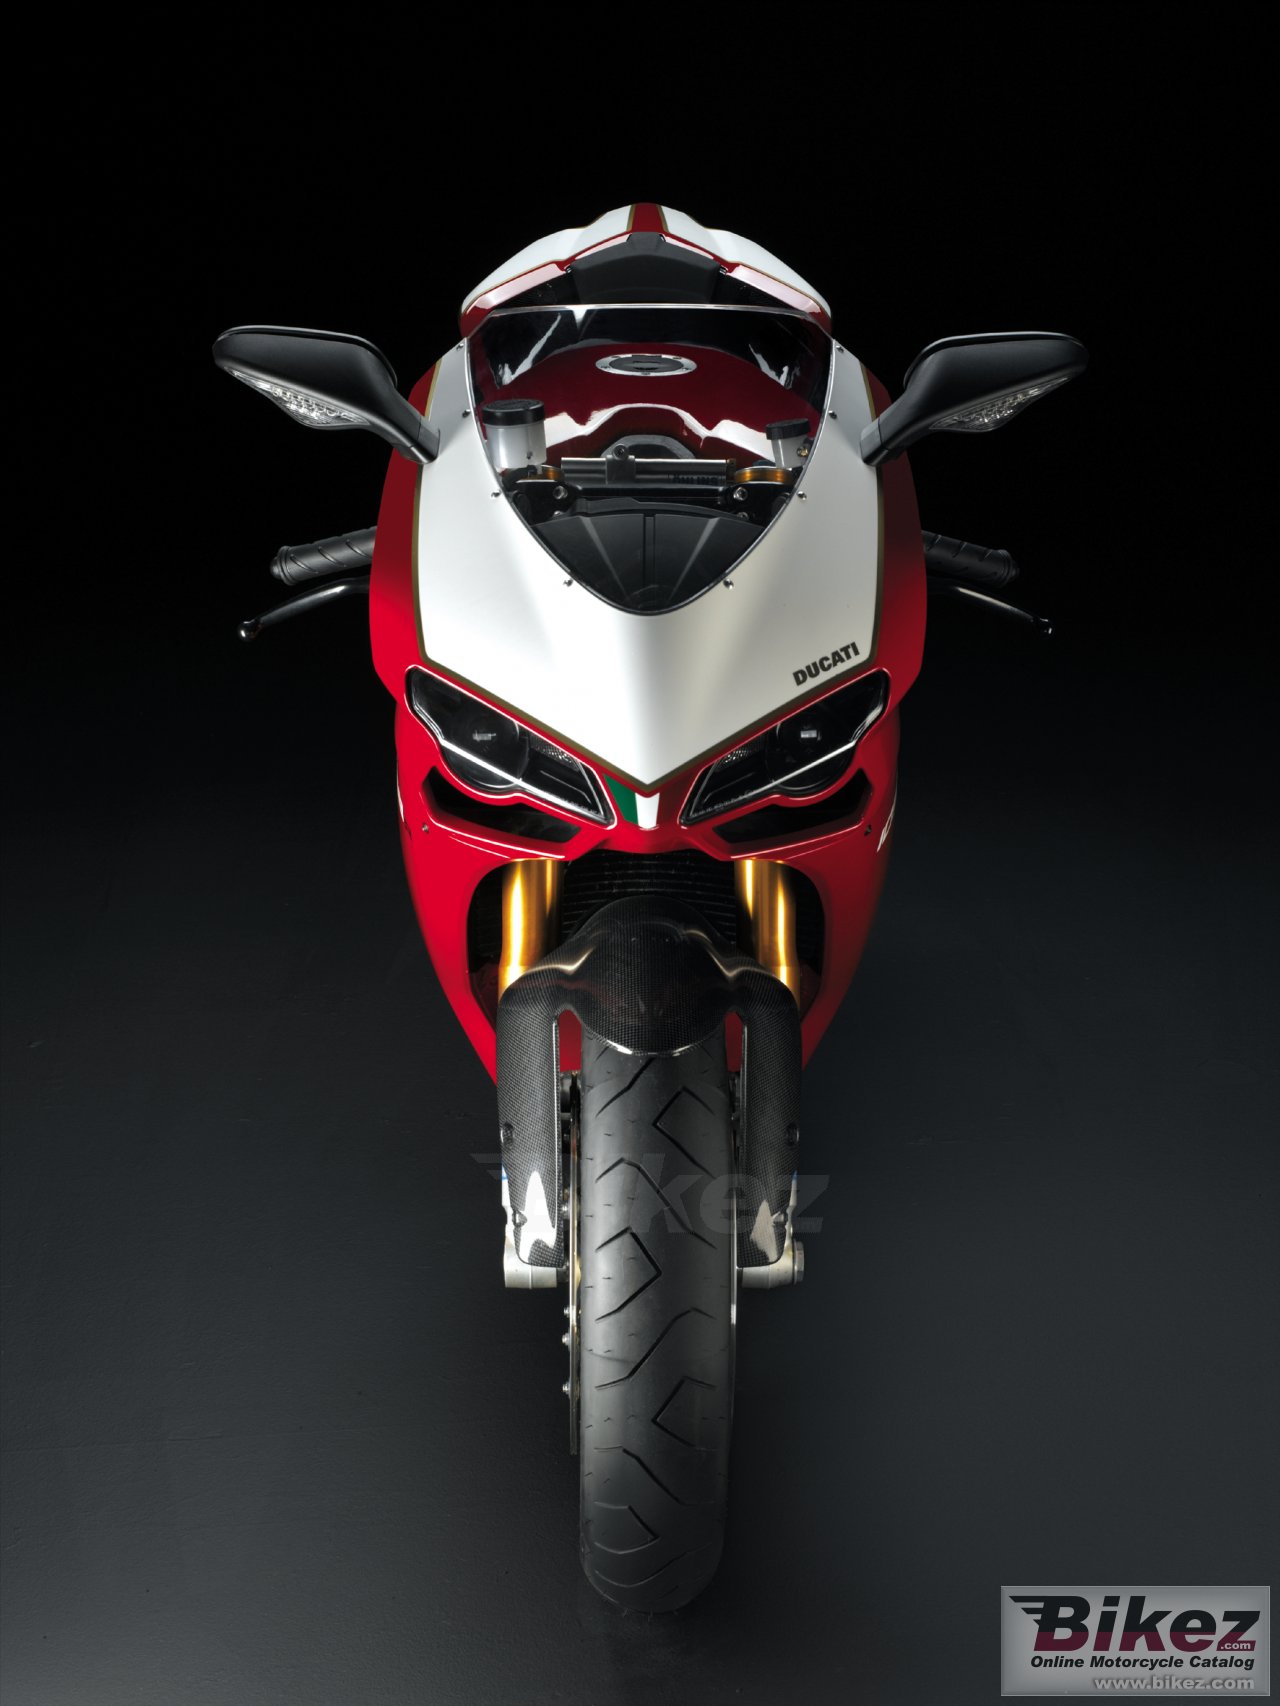 Ducati Superbike 1098 R